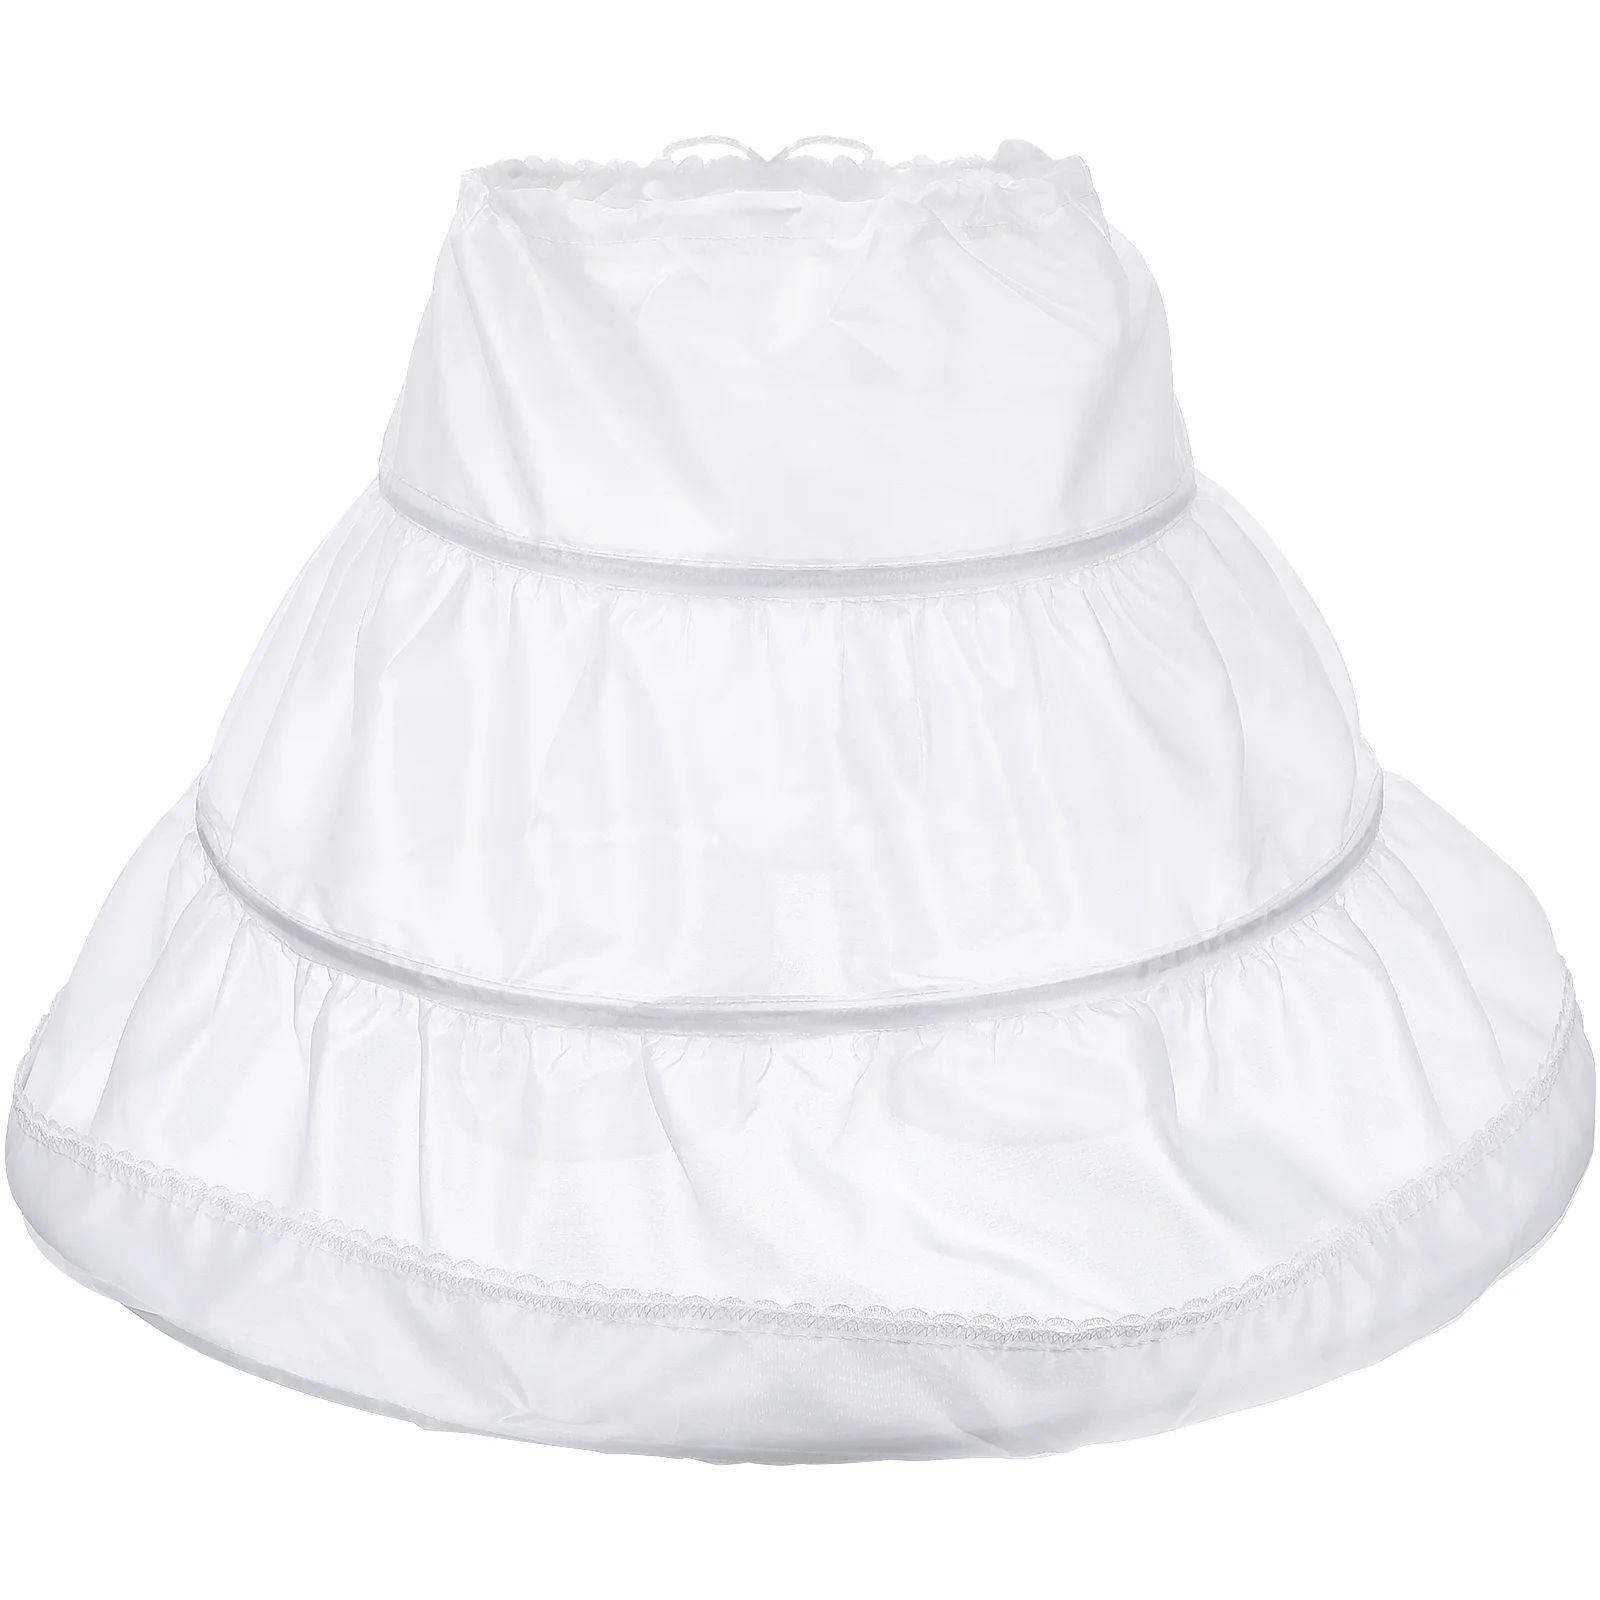 

Petticoat Crinoline Underskirt Skirtgirl Flower Girls Half Dress Hoop Kids Gown For White Petticoats Underskirts Little